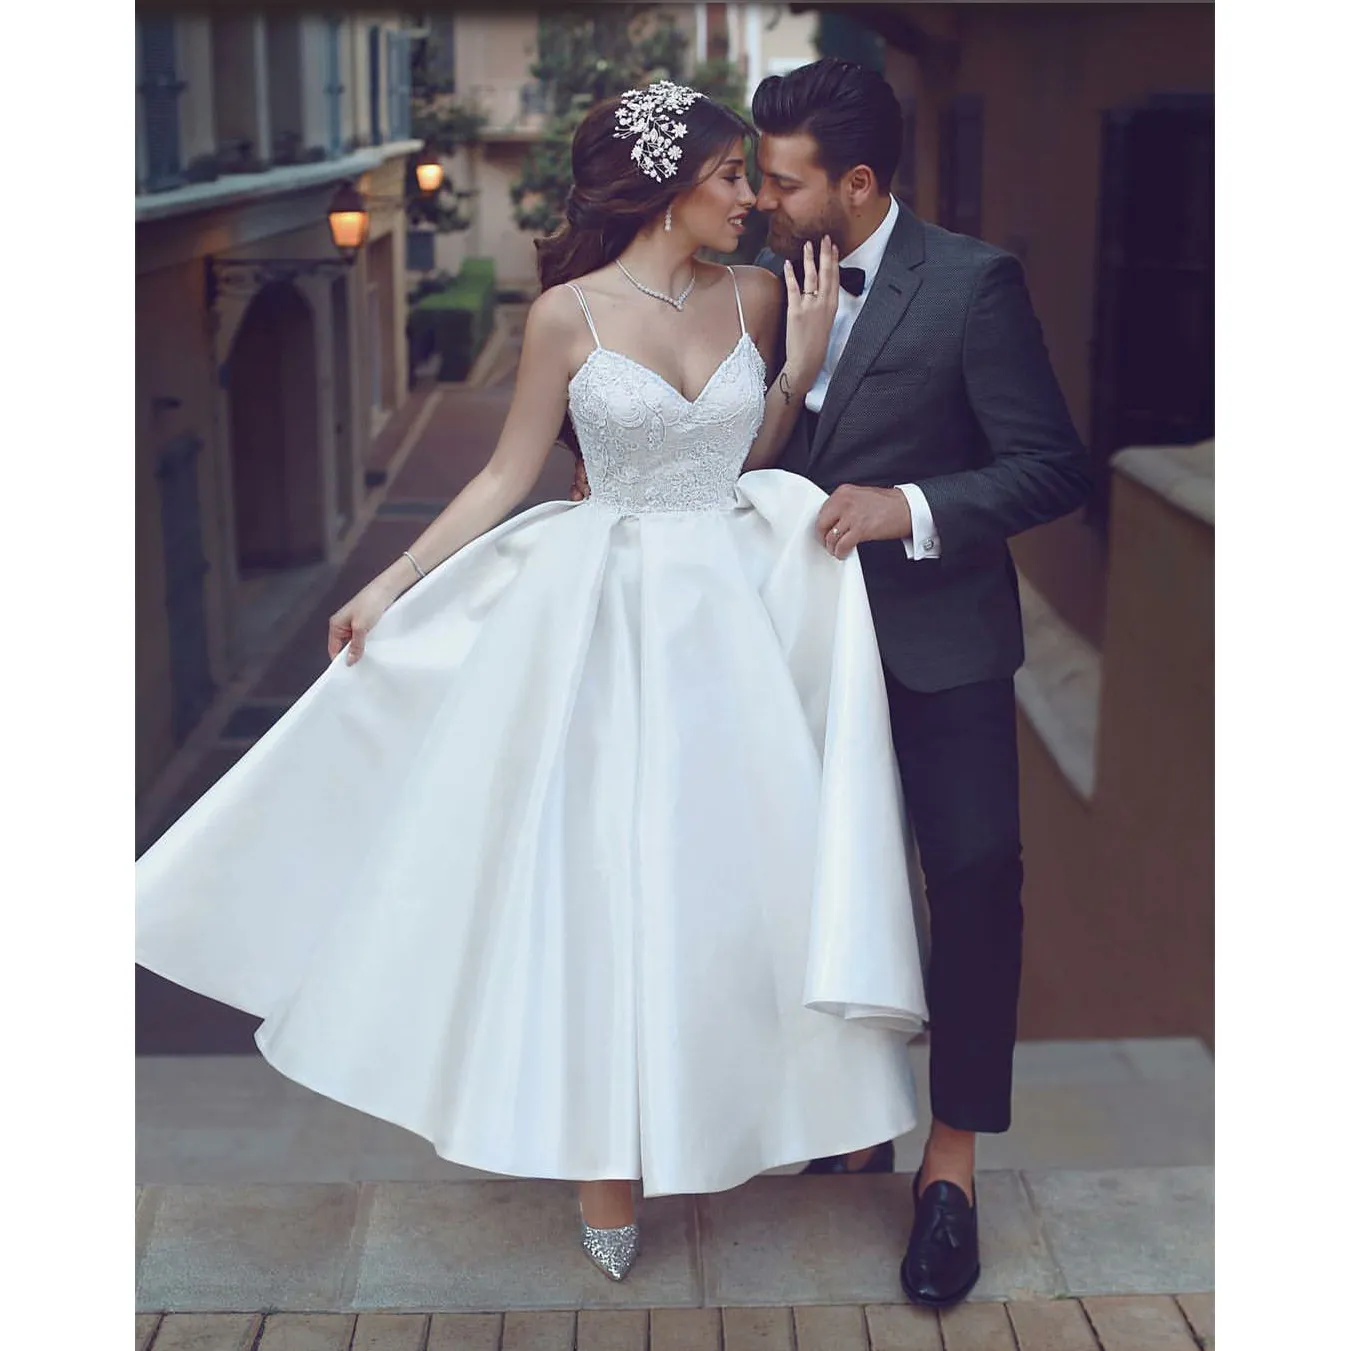 Krótka długość kostki sukienka ślubna urocza biała koronkowa aplikacja spaghetti pasy satynowa suknia ślubna powiedziała Mhamad A-Line Backless Suknie ślubne